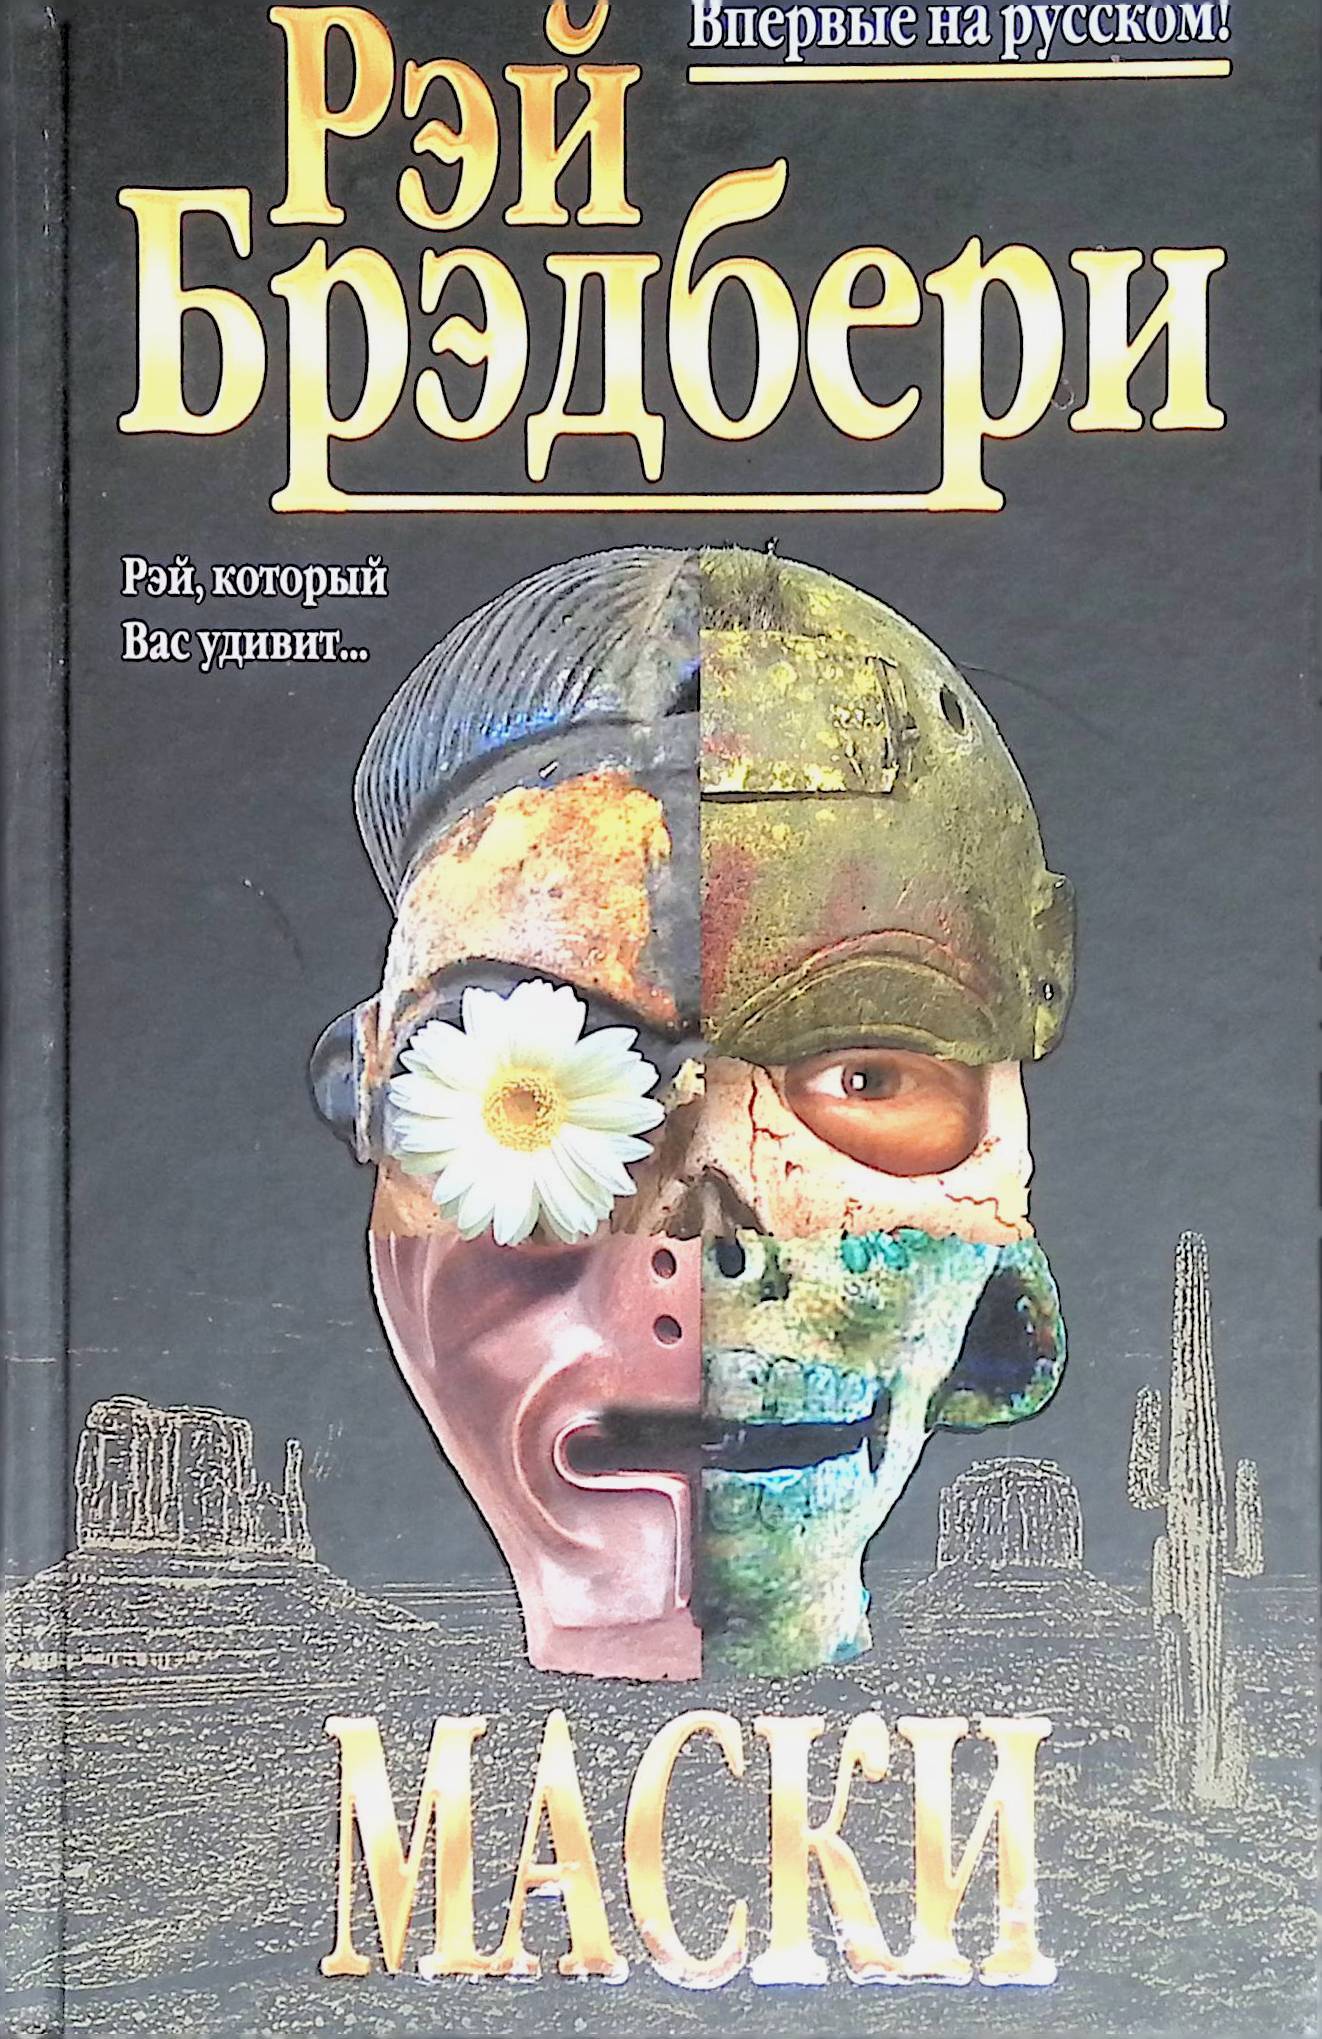 Маска книга. Лица и маски книга детектив. Трилогия масок книга. Книга про маски